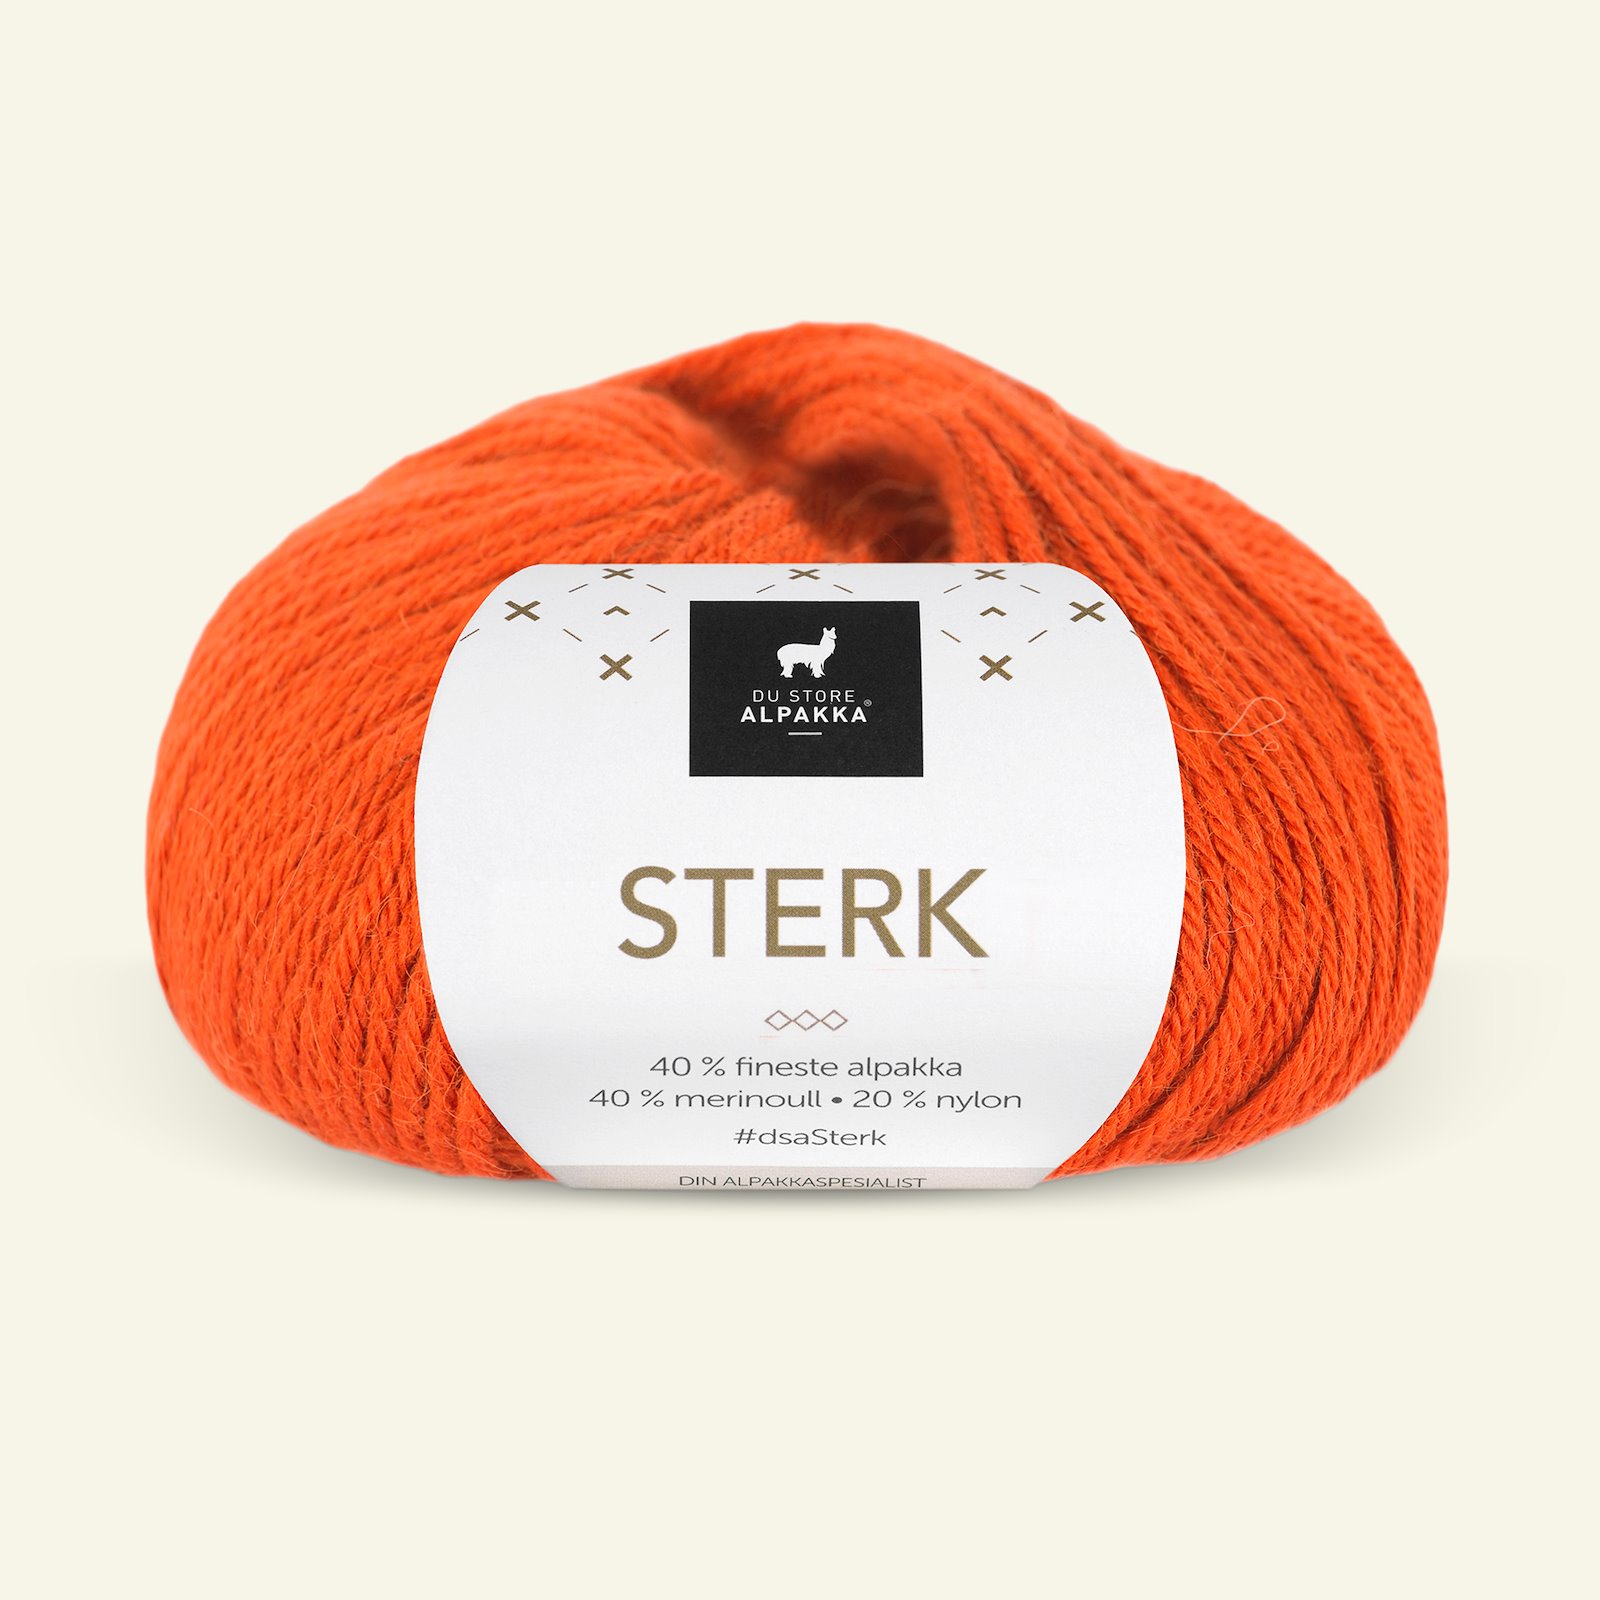 Du Store Alpakka, alpaca merino mixgarn "Sterk", orange (907) 90000699_pack